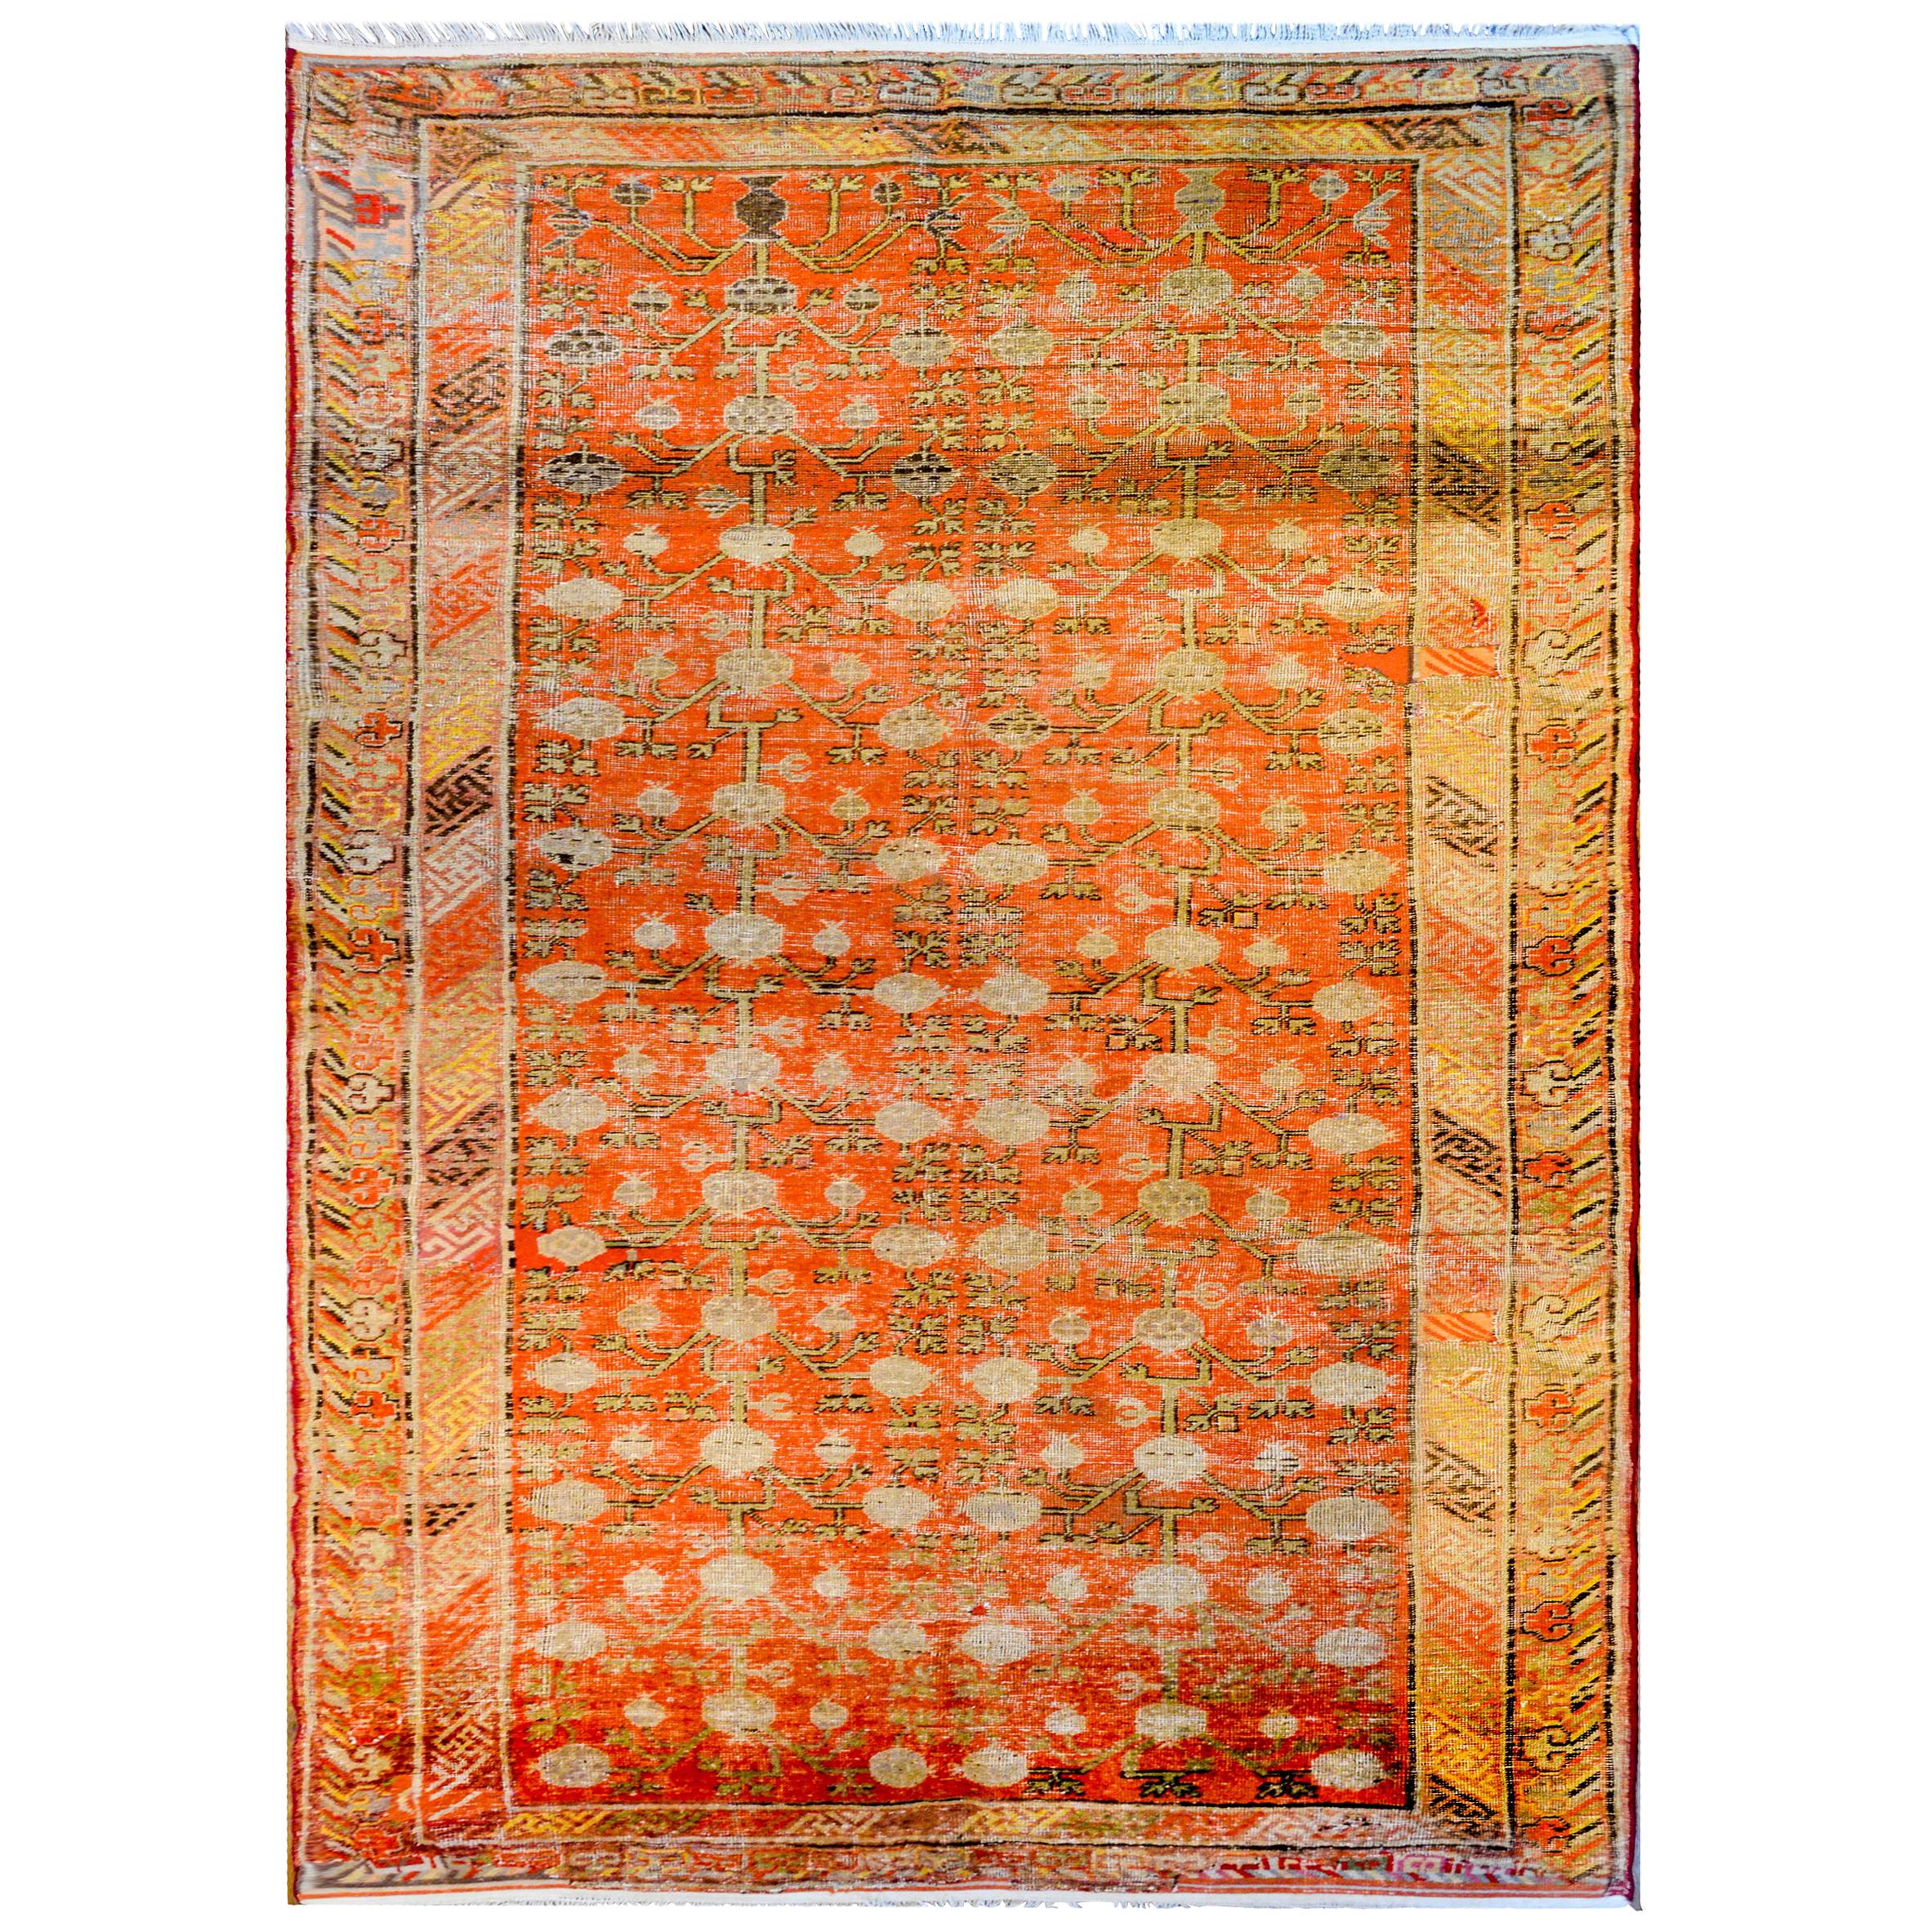 Wunderschöner zentralasiatischer Khotan-Teppich des frühen 20. Jahrhunderts